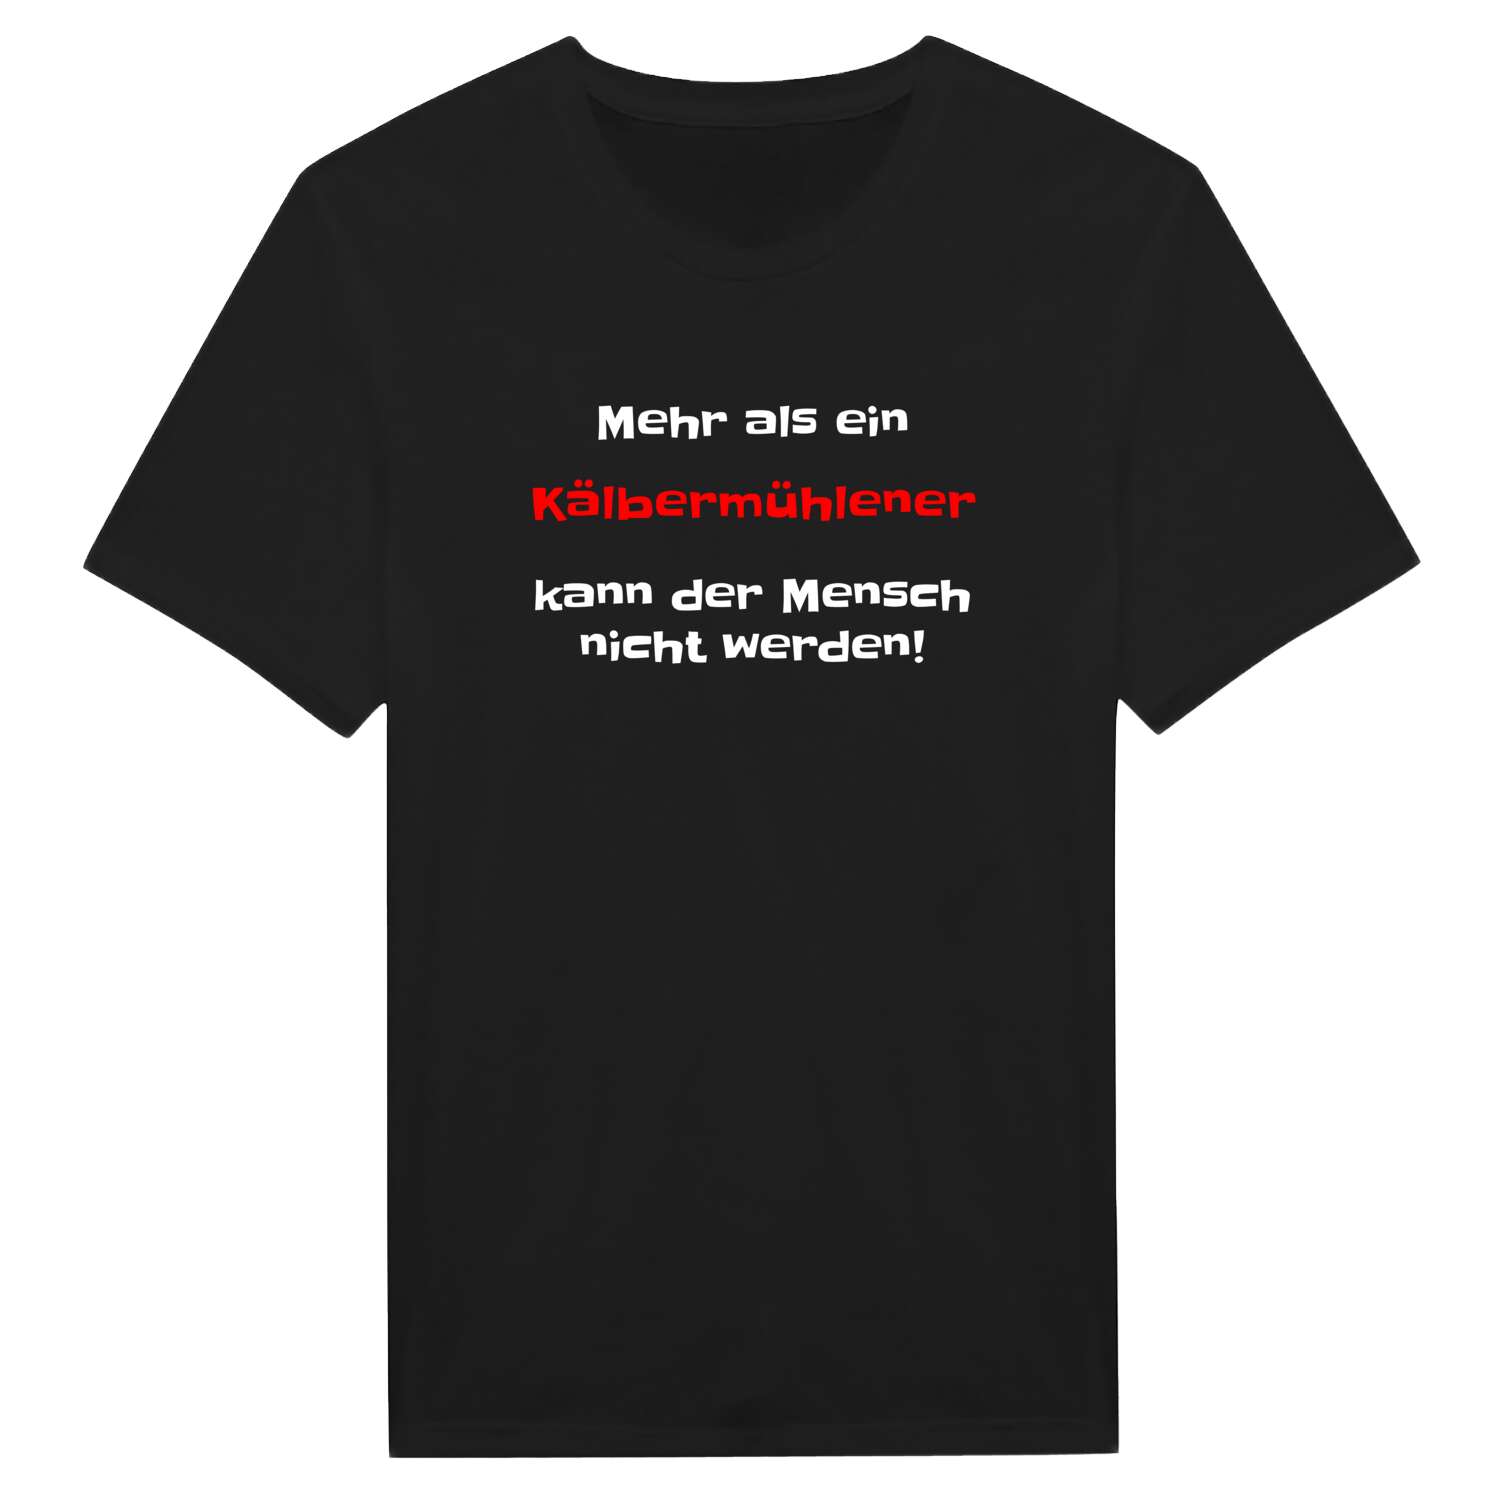 Kälbermühle T-Shirt »Mehr als ein«